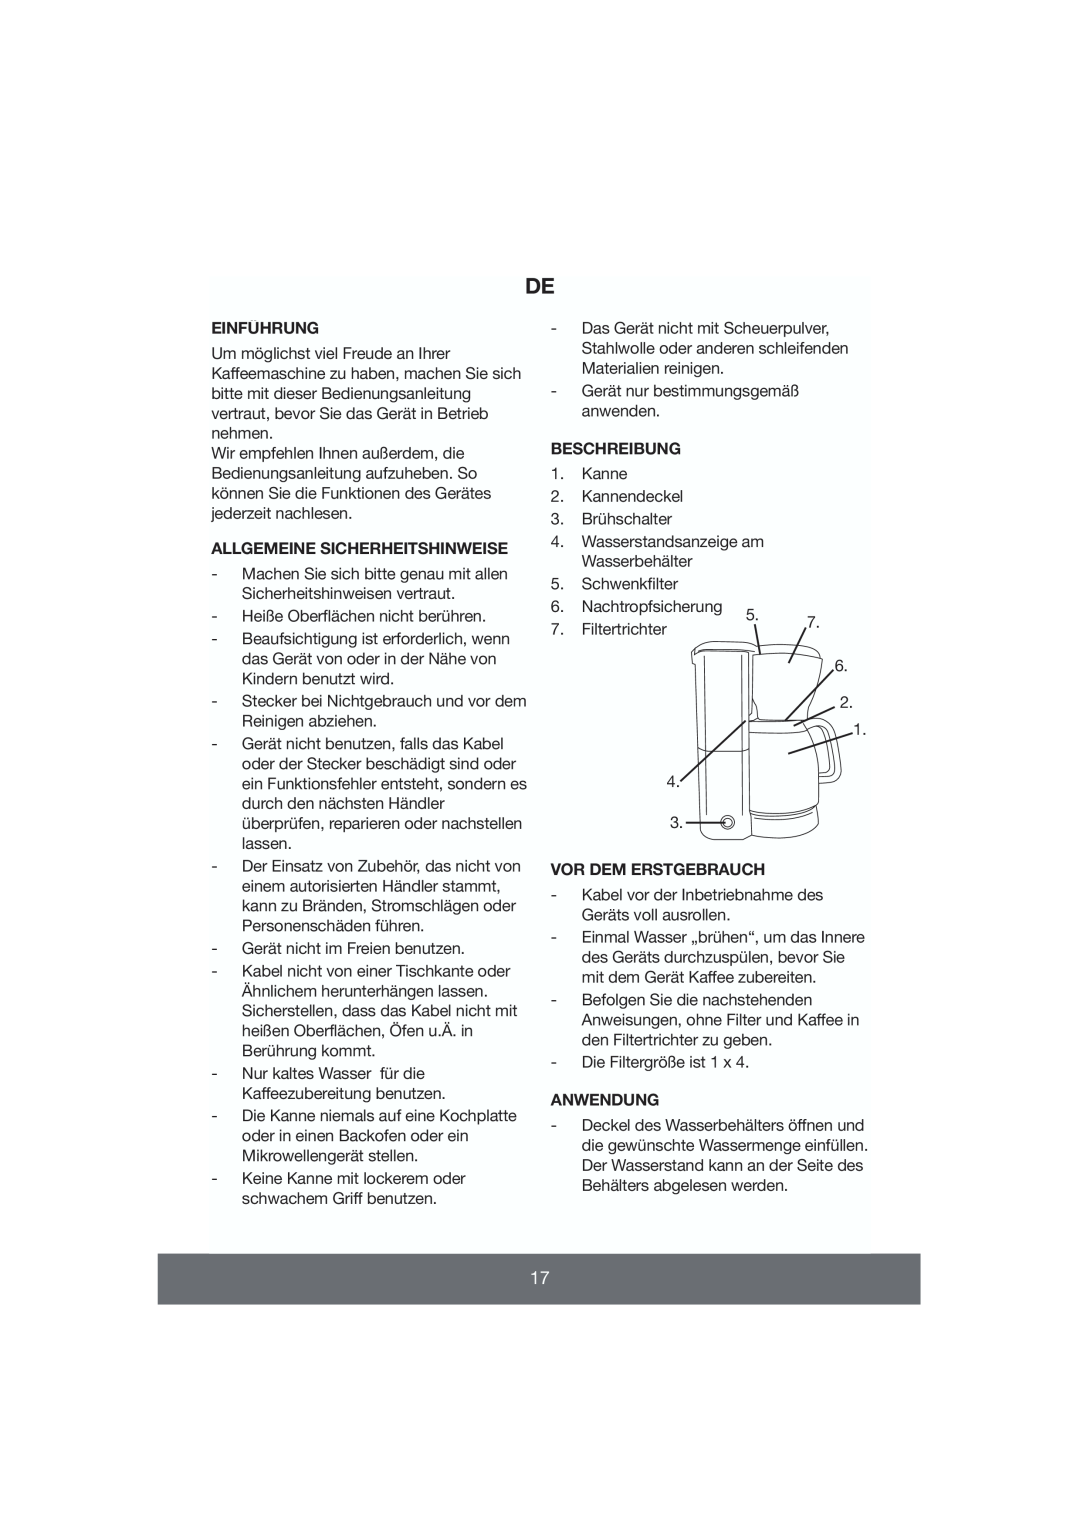 Butler 645-056 manual Einführung, Allgemeine Sicherheitshinweise, Beschreibung, Vor Dem Erstgebrauch, Anwendung 